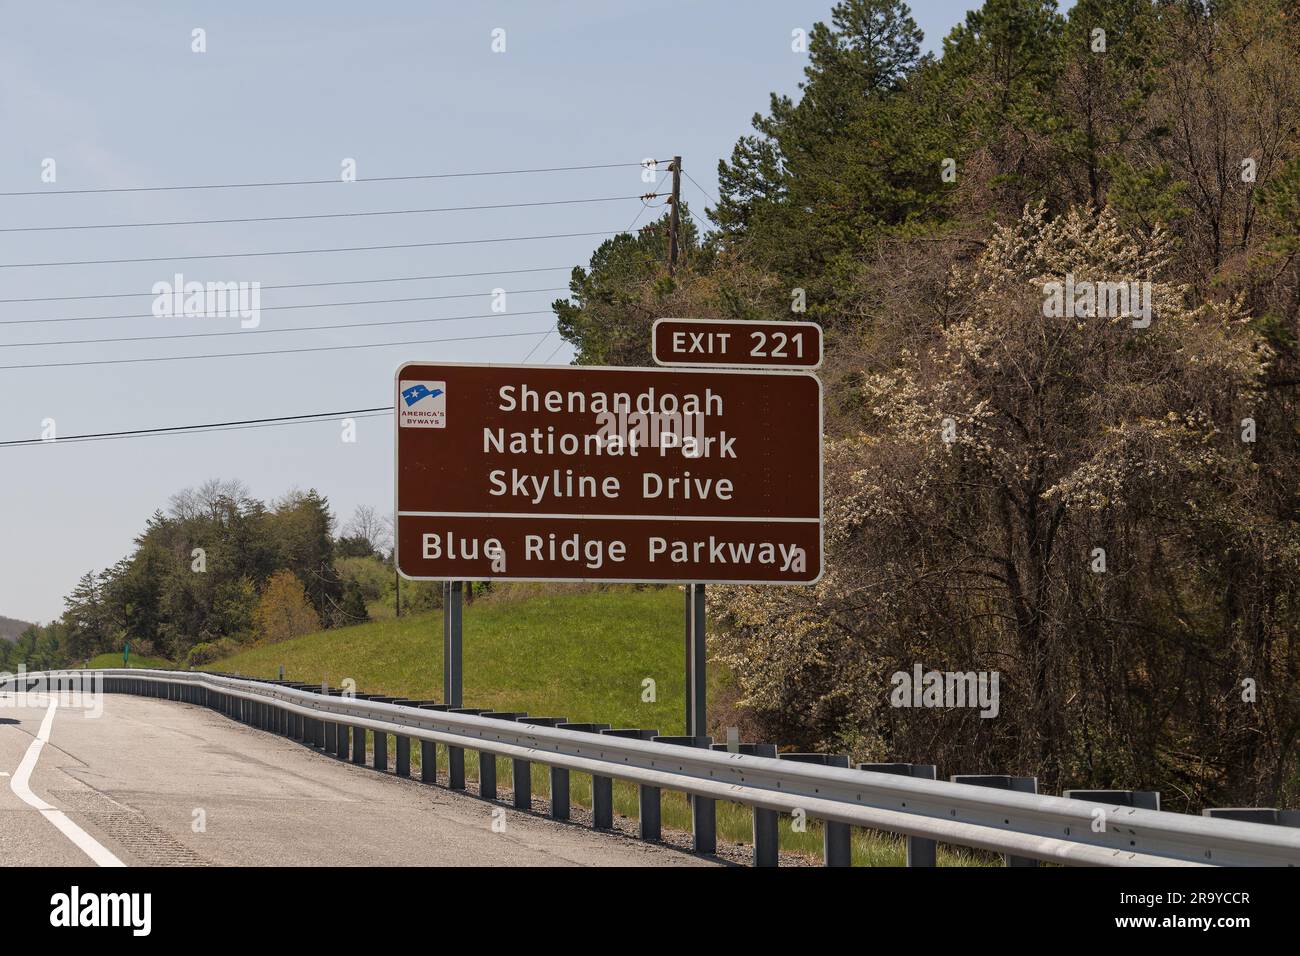 staunton, va - 20 avril 2022 : Interstate 81, sortie 221, panneau pour Shenandoaj National Park Skyline Drive et Blue Ridge Parkway avec logo pour l'Amérique Banque D'Images